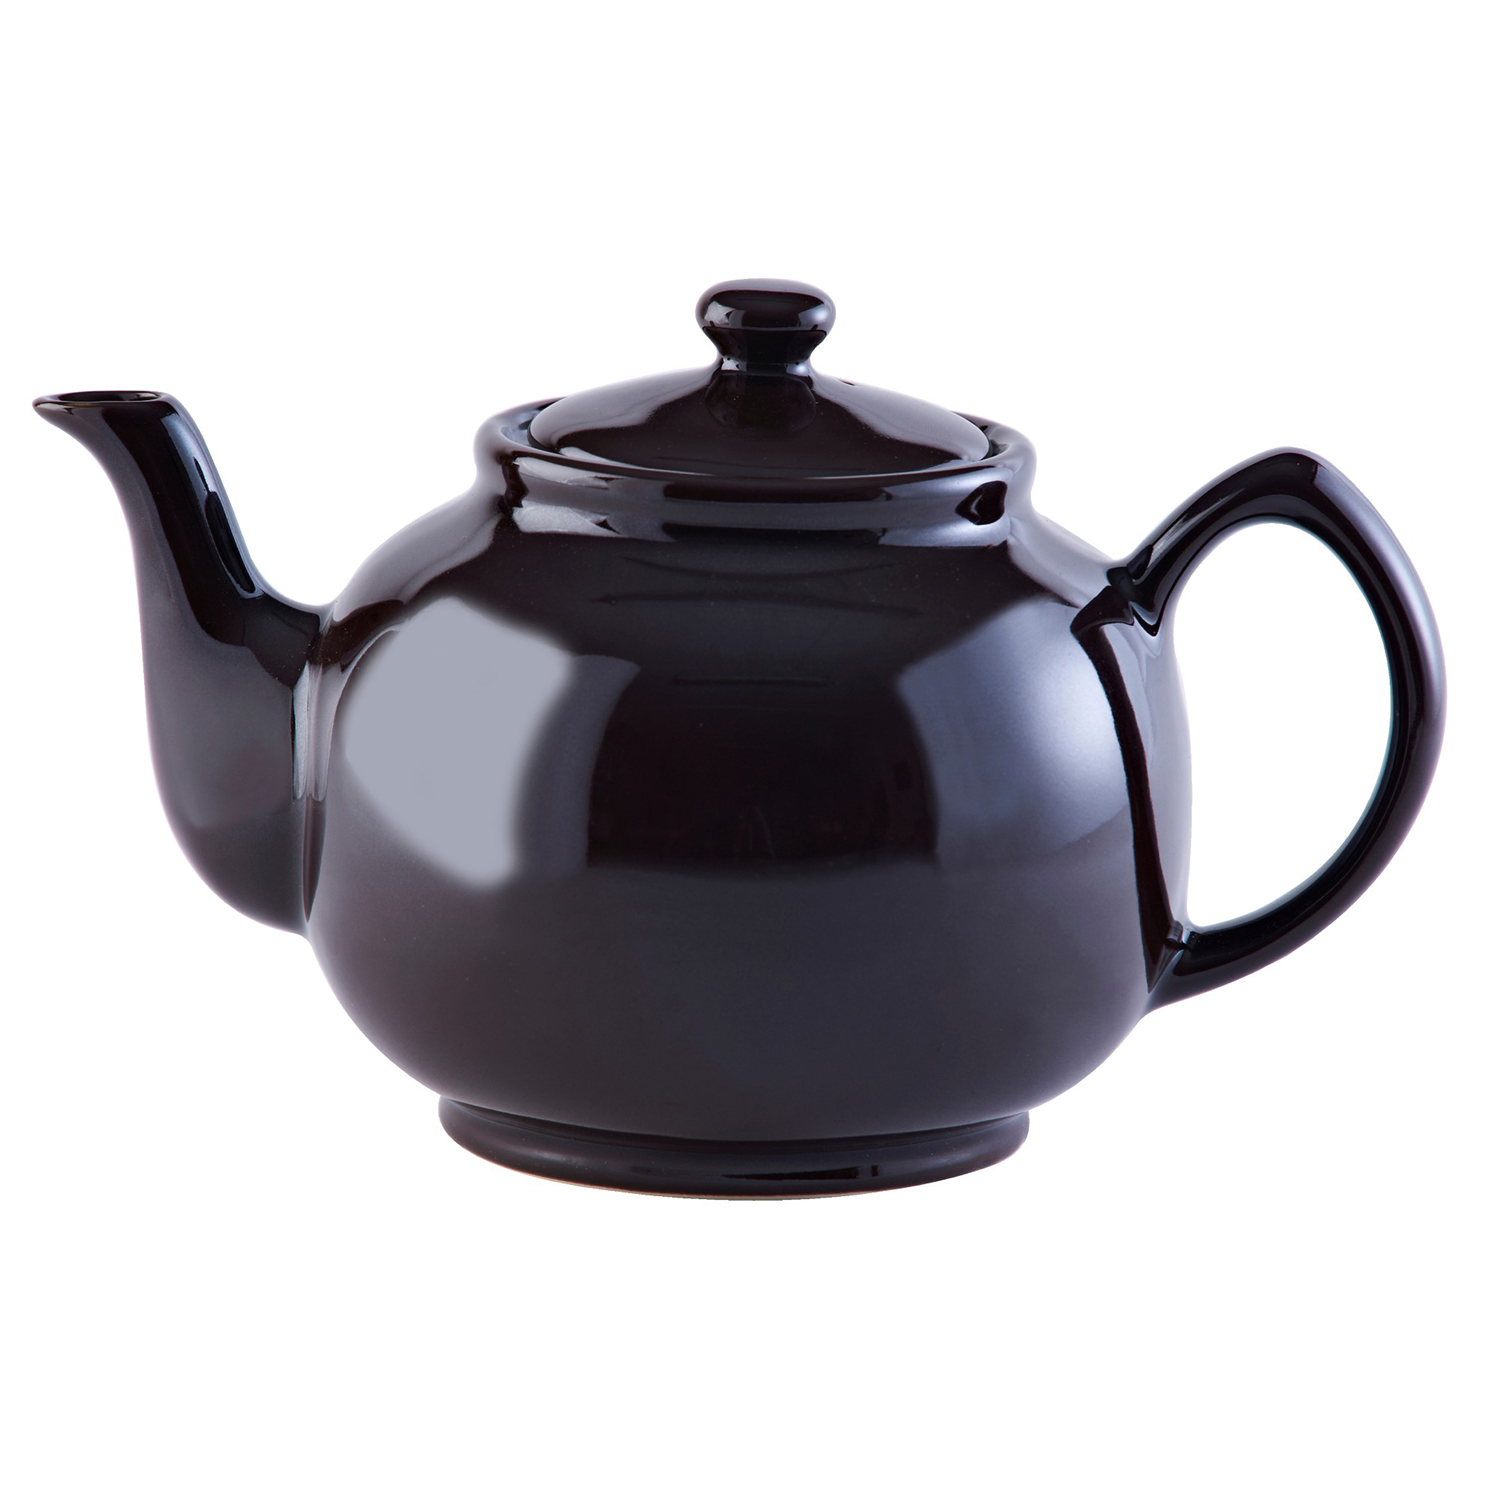 Teekanne | Teekanne klassisch, braun | 10 Tassen